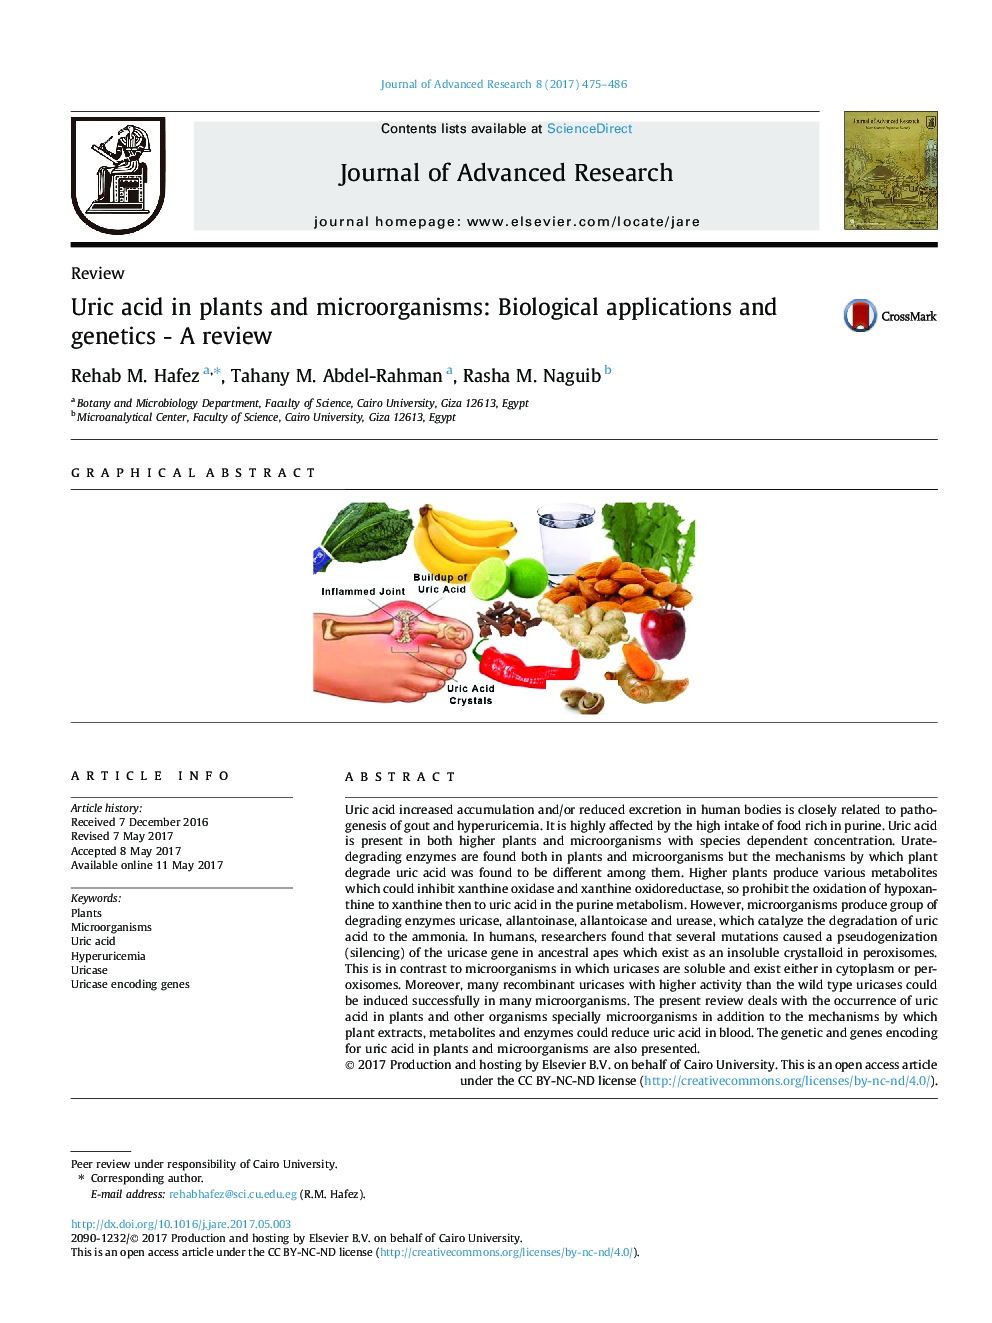 اسید اوریک در گیاهان و میکروارگانیسم ها: کاربرد بیولوژیکی و ژنتیک - بررسی 